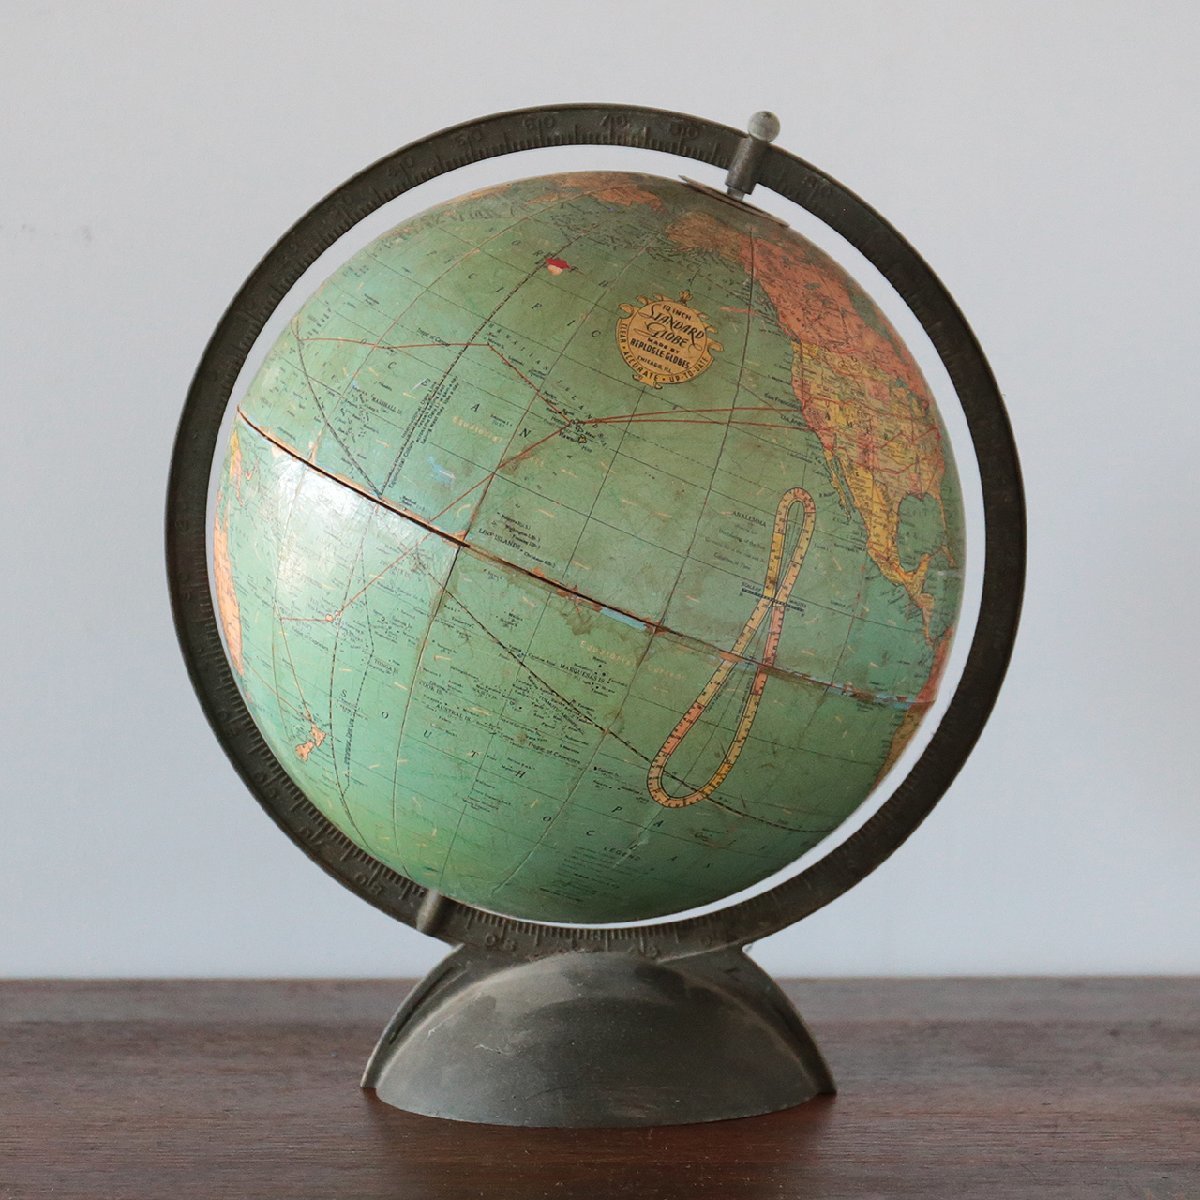 地球儀 globe ディスプレイ インダストリアル アンティーク ヴィンテージ 店舗什器 おしゃれ 雑貨